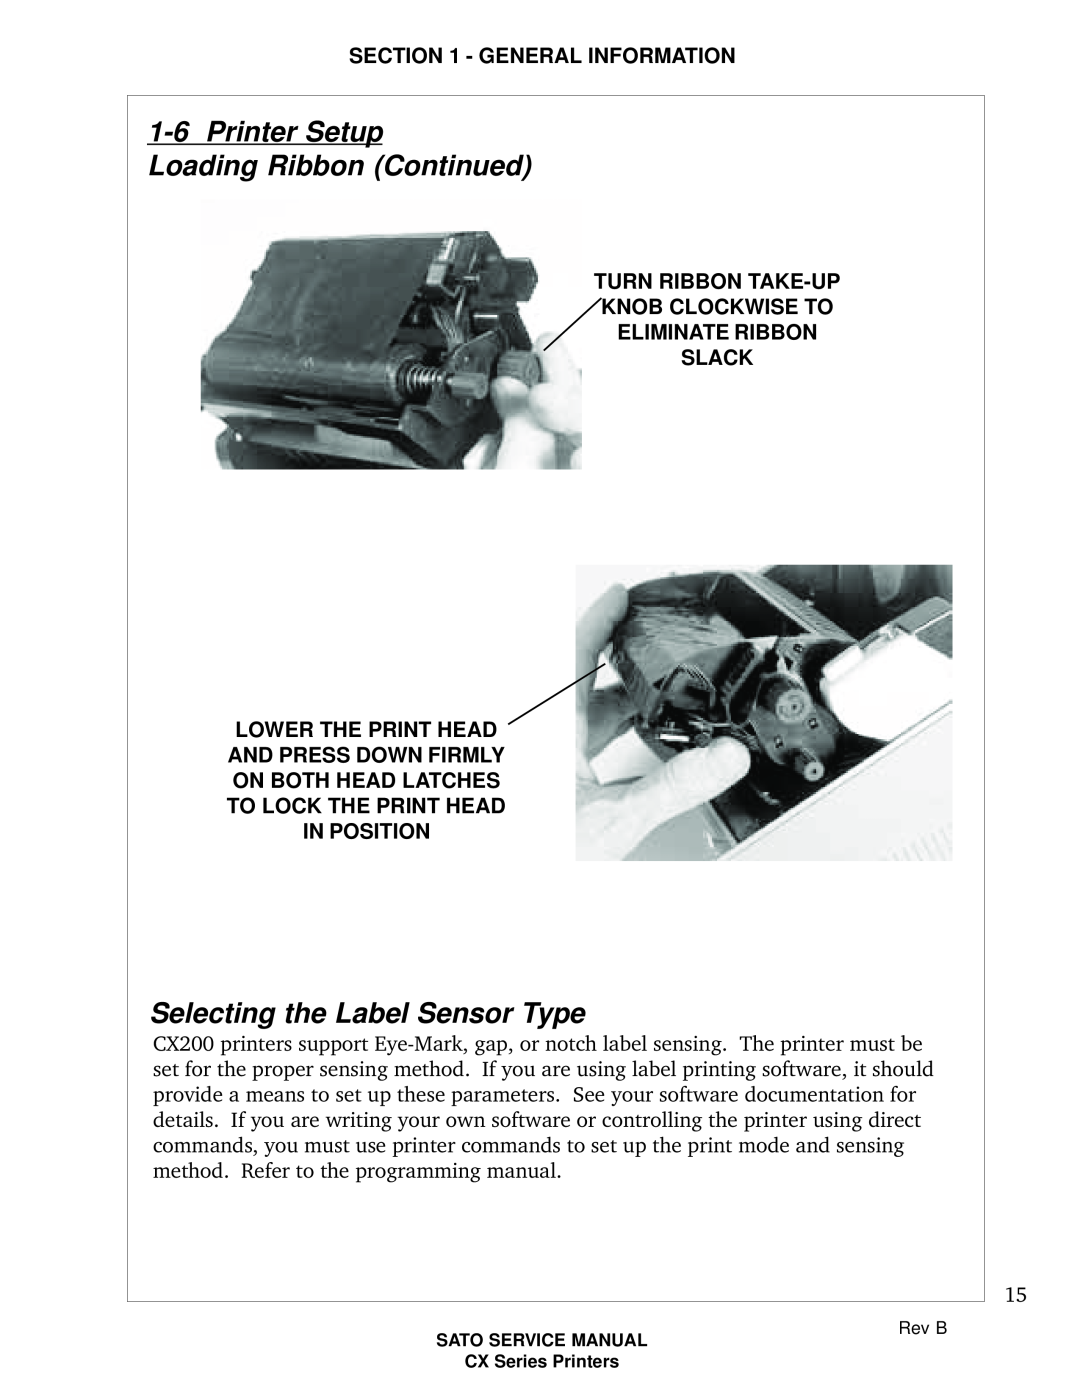 SATO CX200 manual Selecting the Label Sensor Type, Turn Ribbon Take-Up Knob Clockwise To Eliminate Ribbon Slack 